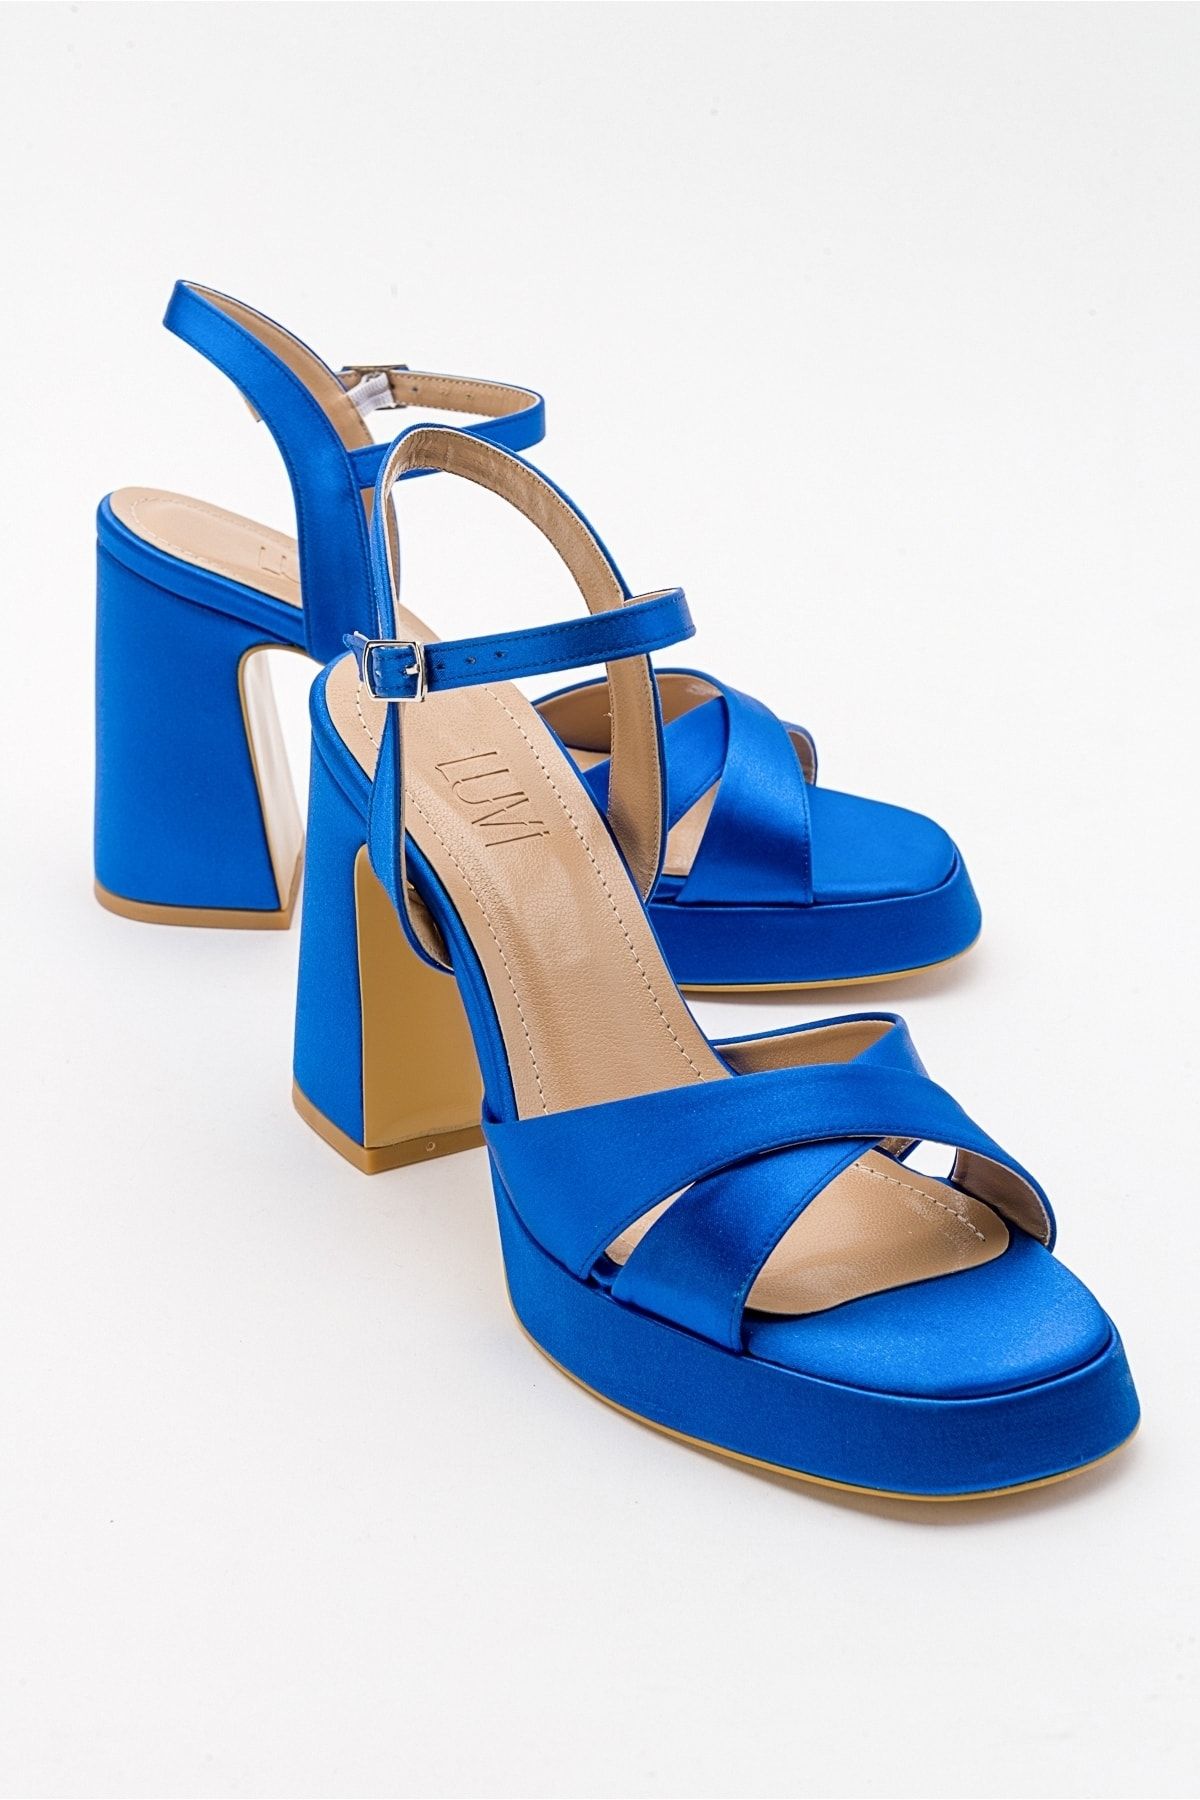 luvishoes Lello Sax Mavi Saten Kadın Topuklu Ayakkabı